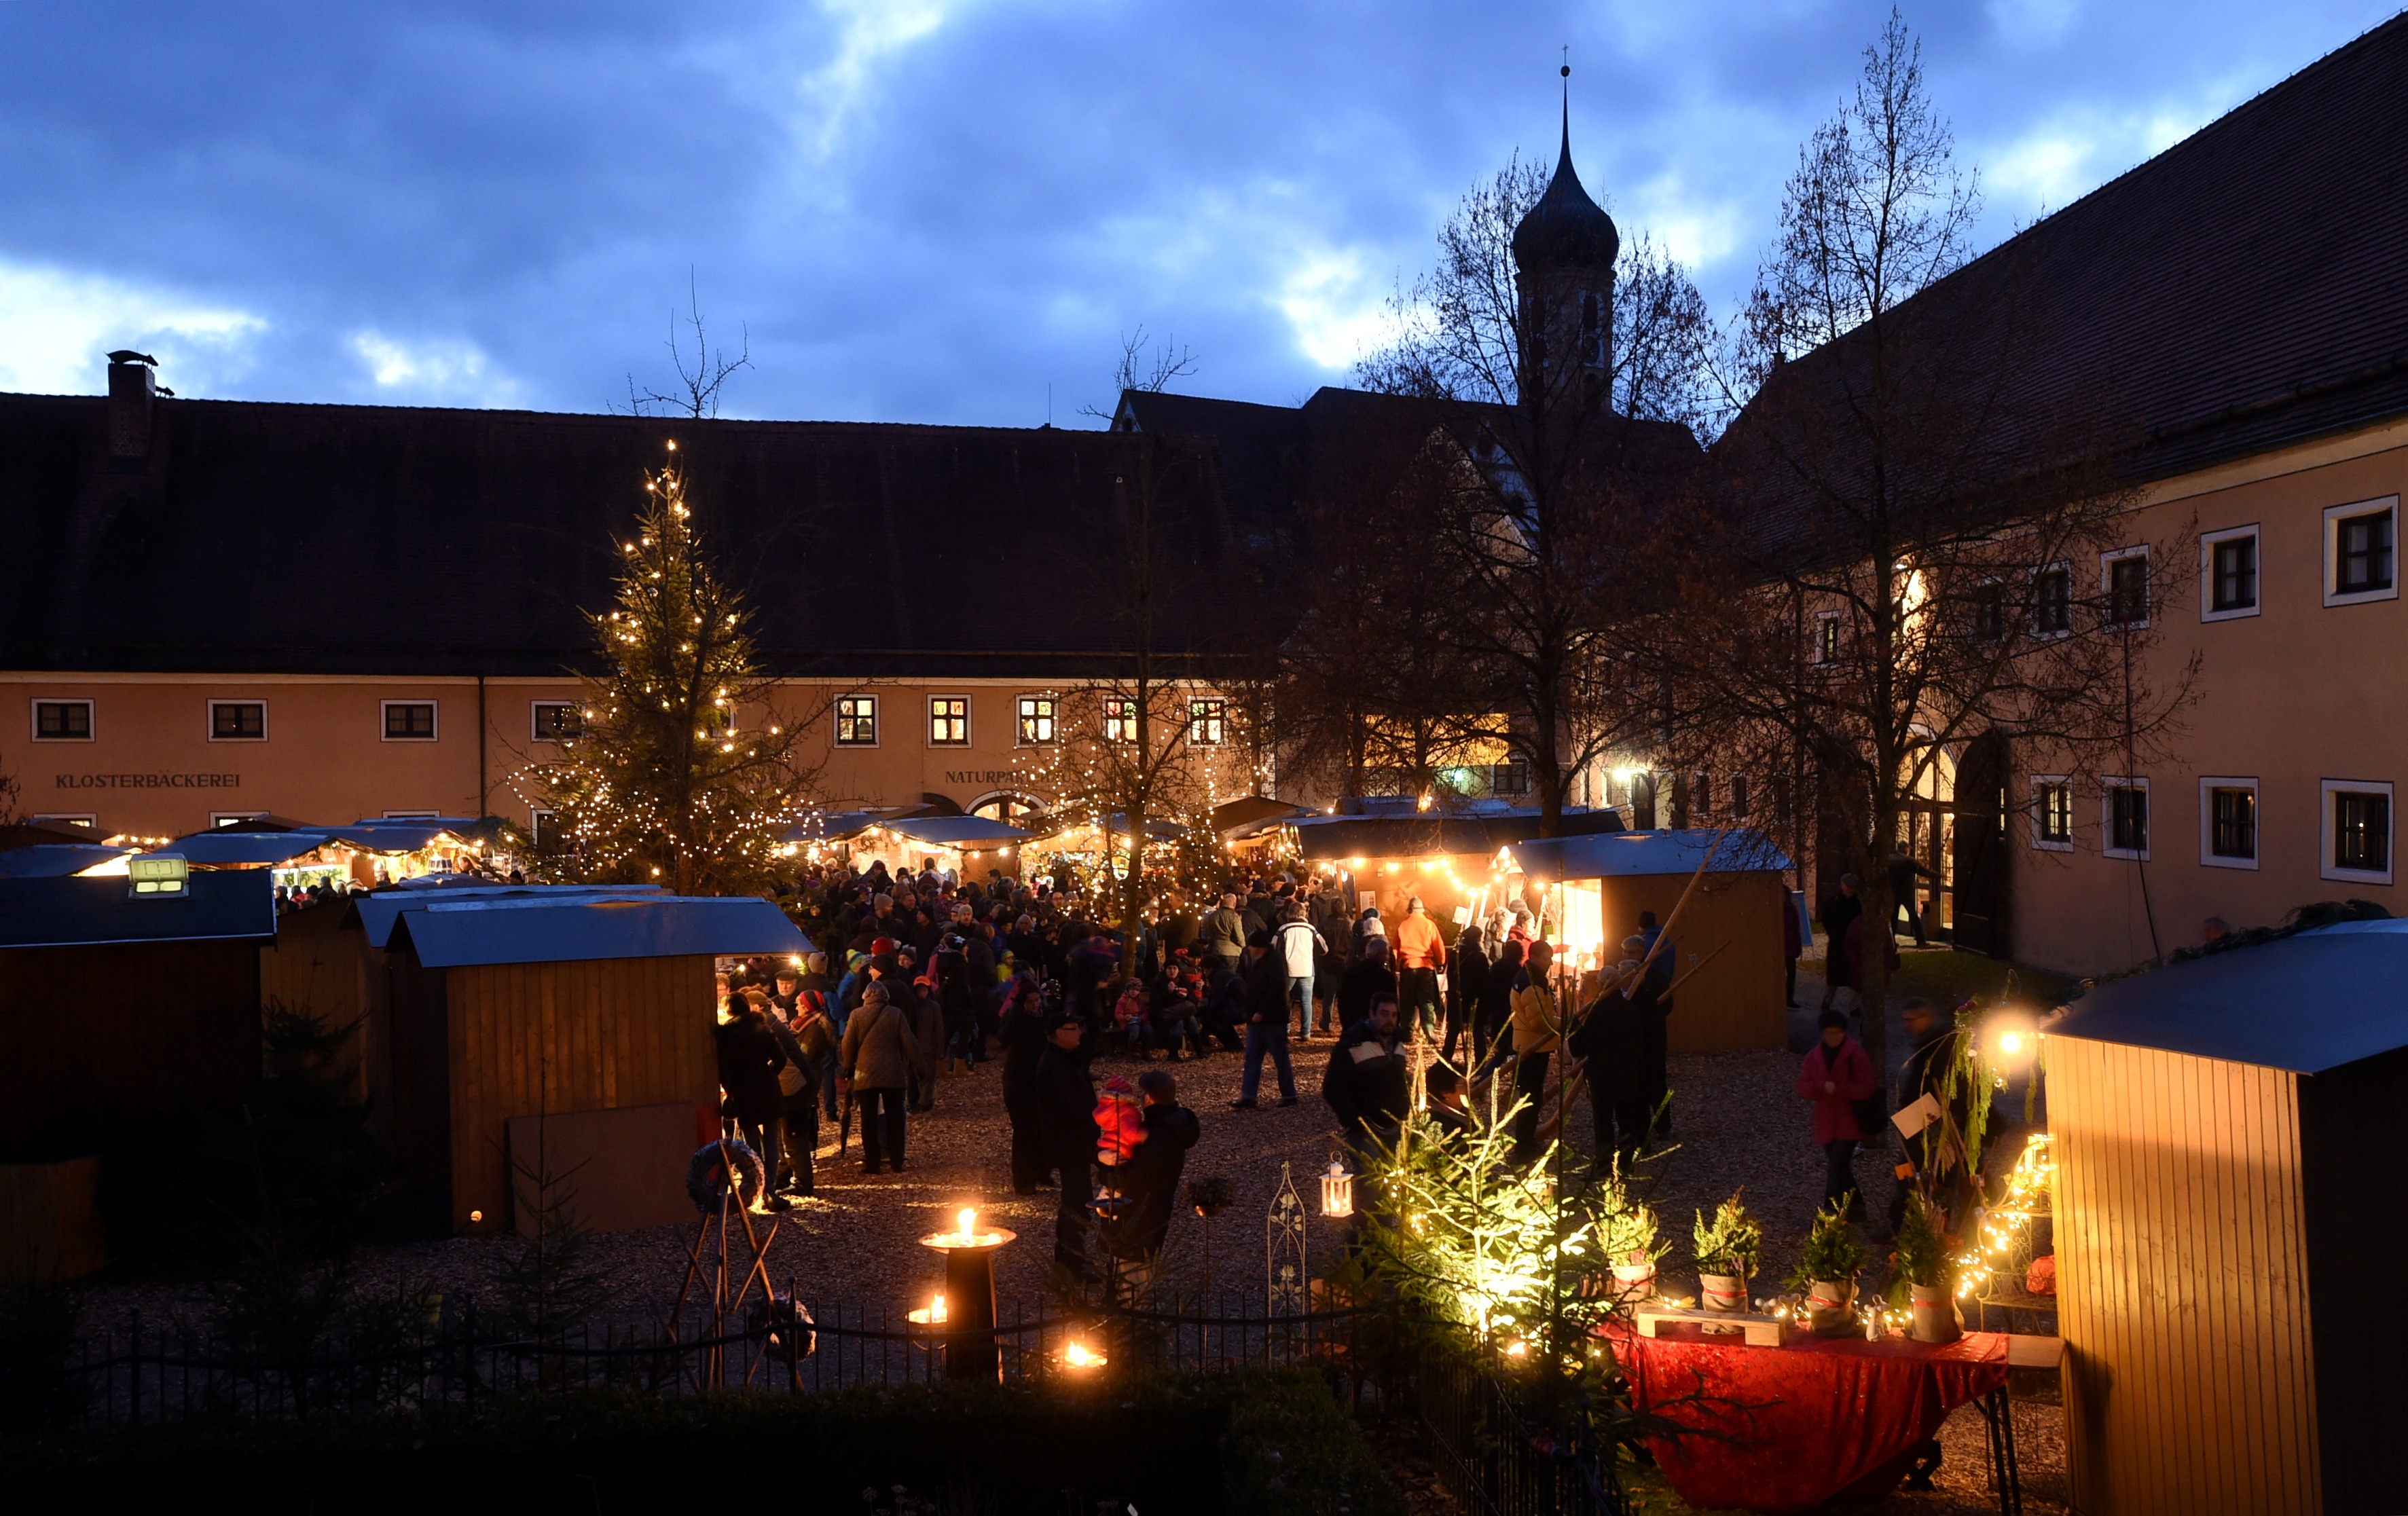 Die vorweihnachtliche Atmosphäre des Oberschönenfelder Weihnachtsmarktes auf dem Areal der 800 Jahre alten Klosteranlage im idyllischen Schwarzachtal ist weithin unvergleichlich!